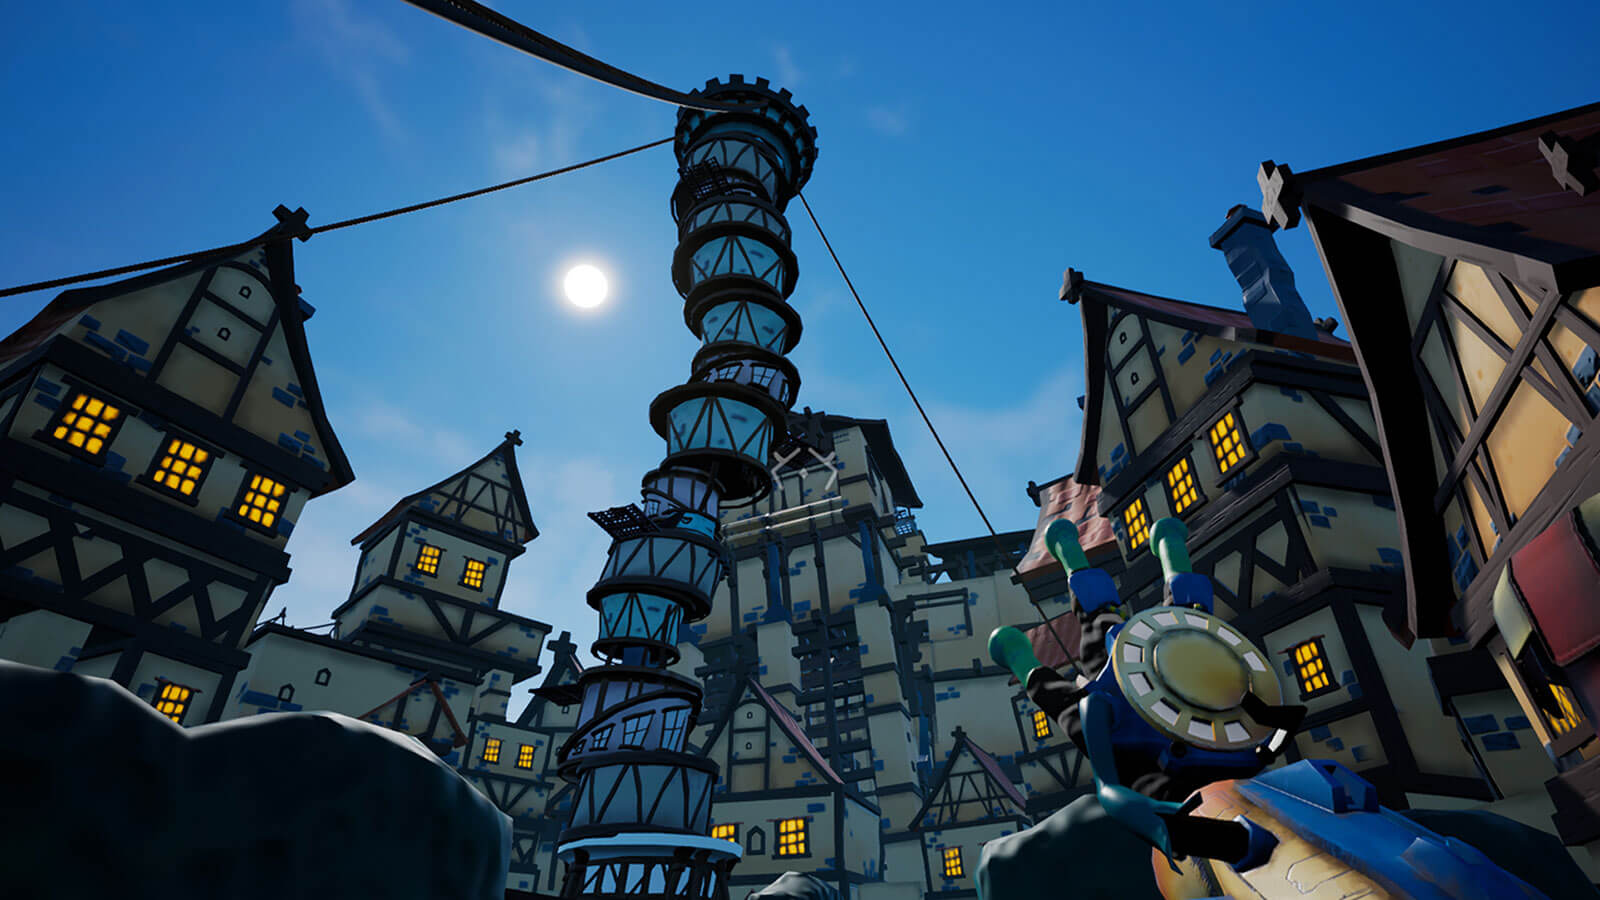 El jugador mira hacia la enorme torre extrañamente apilada en una plaza de la ciudad